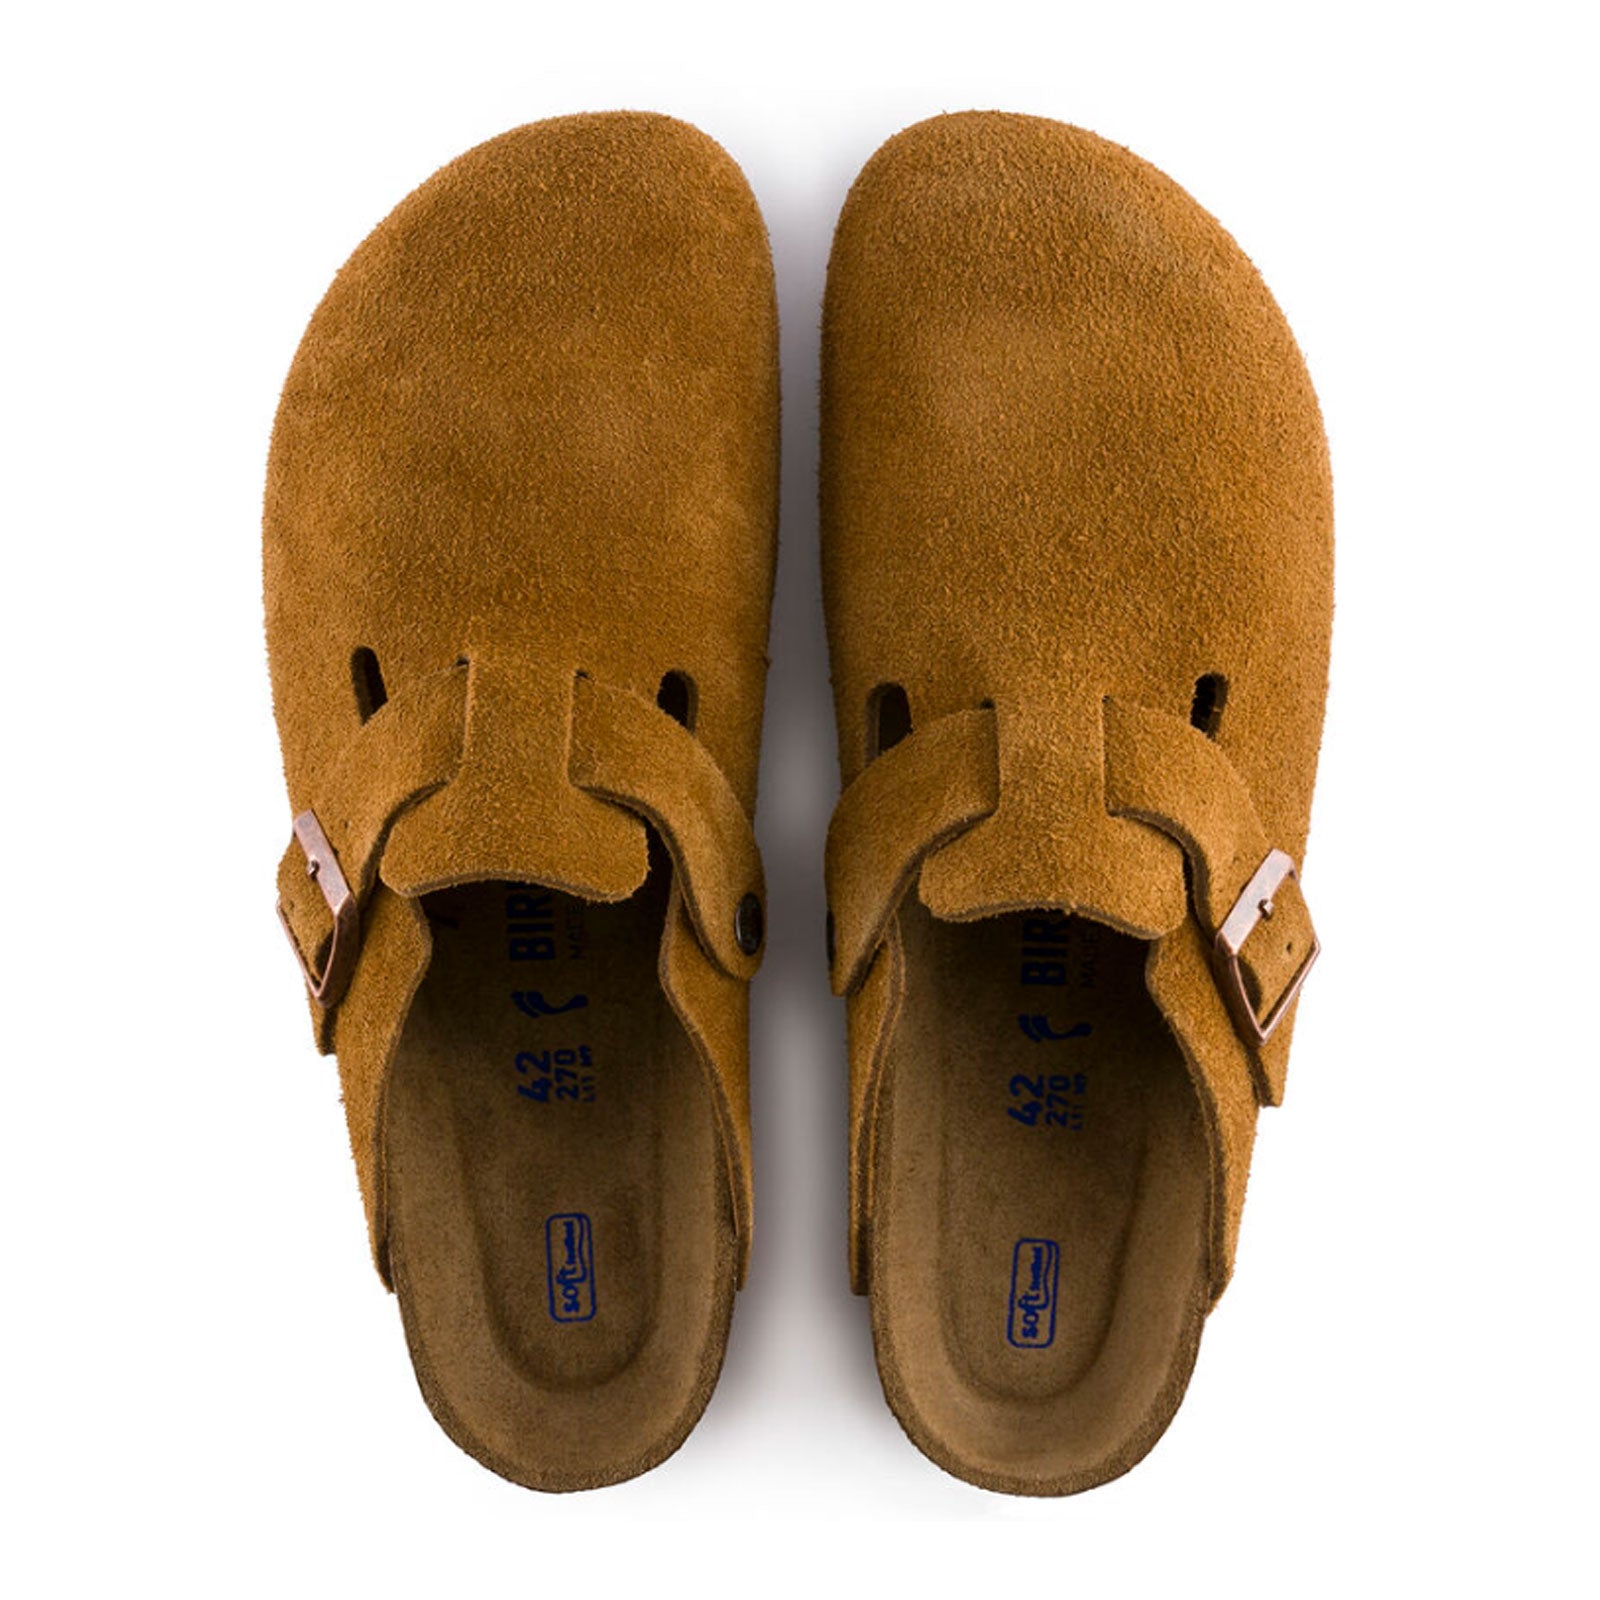 Birkenstock Boston Clog (Men) - Mink Suede - The Heel Shoe Fitters